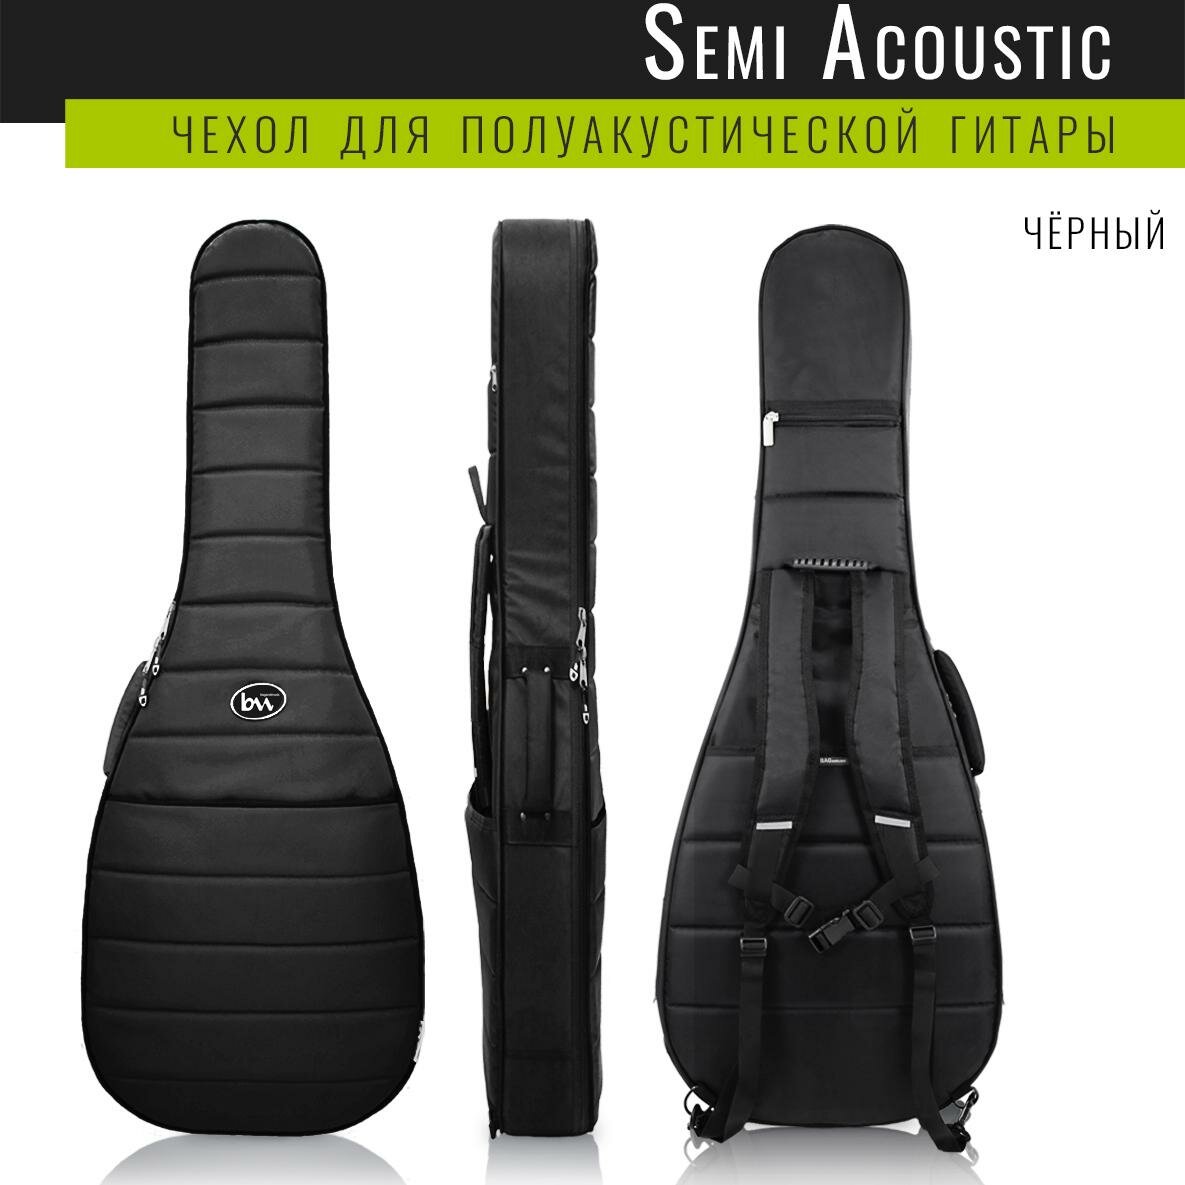 Чехол для полуакустической гитары BAG&Music SEMI Acoustic PRO (полужесткий, черный)